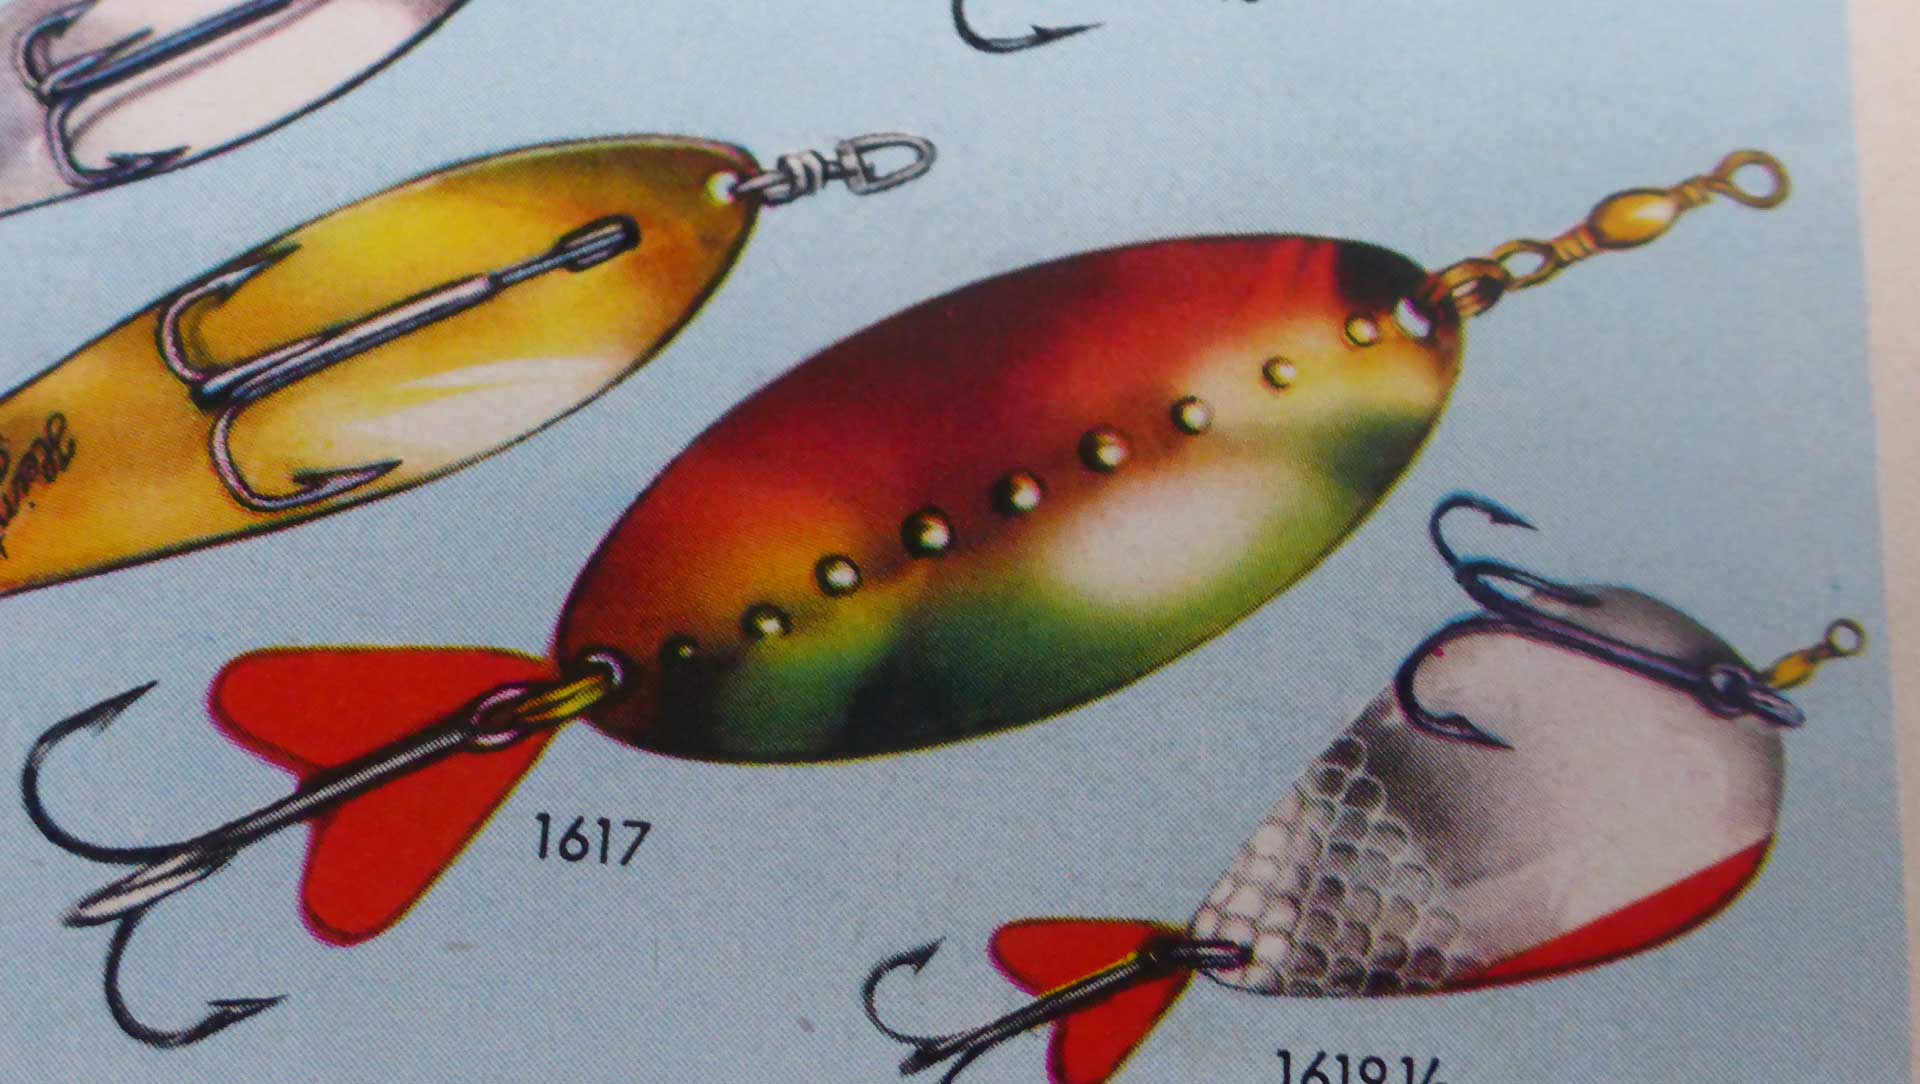 Im Katalog von 1961 gibt es den vernickelten Kess-Spinner plötzlich auch mit farbiger Bemalung. Im Katalog von 1958 fehlte er komplett, offenbar wurde er Anfang der 1960er neu aufgelegt.